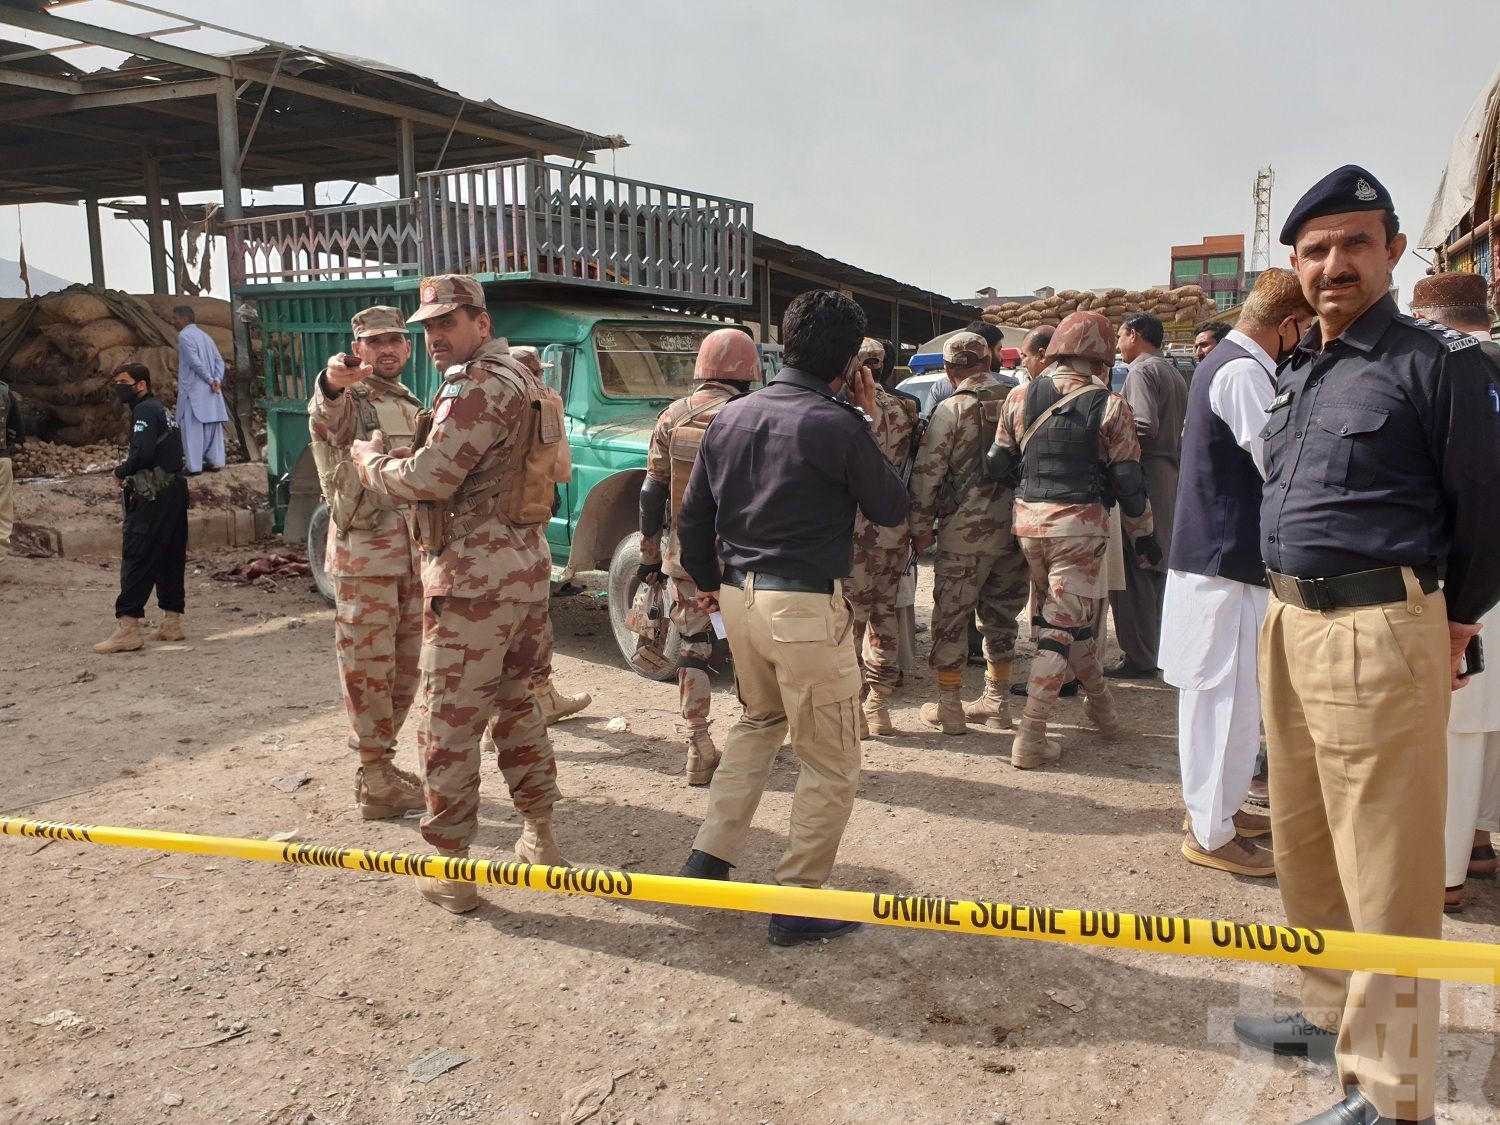 巴基斯坦露天市集發生爆炸 至少16死30傷